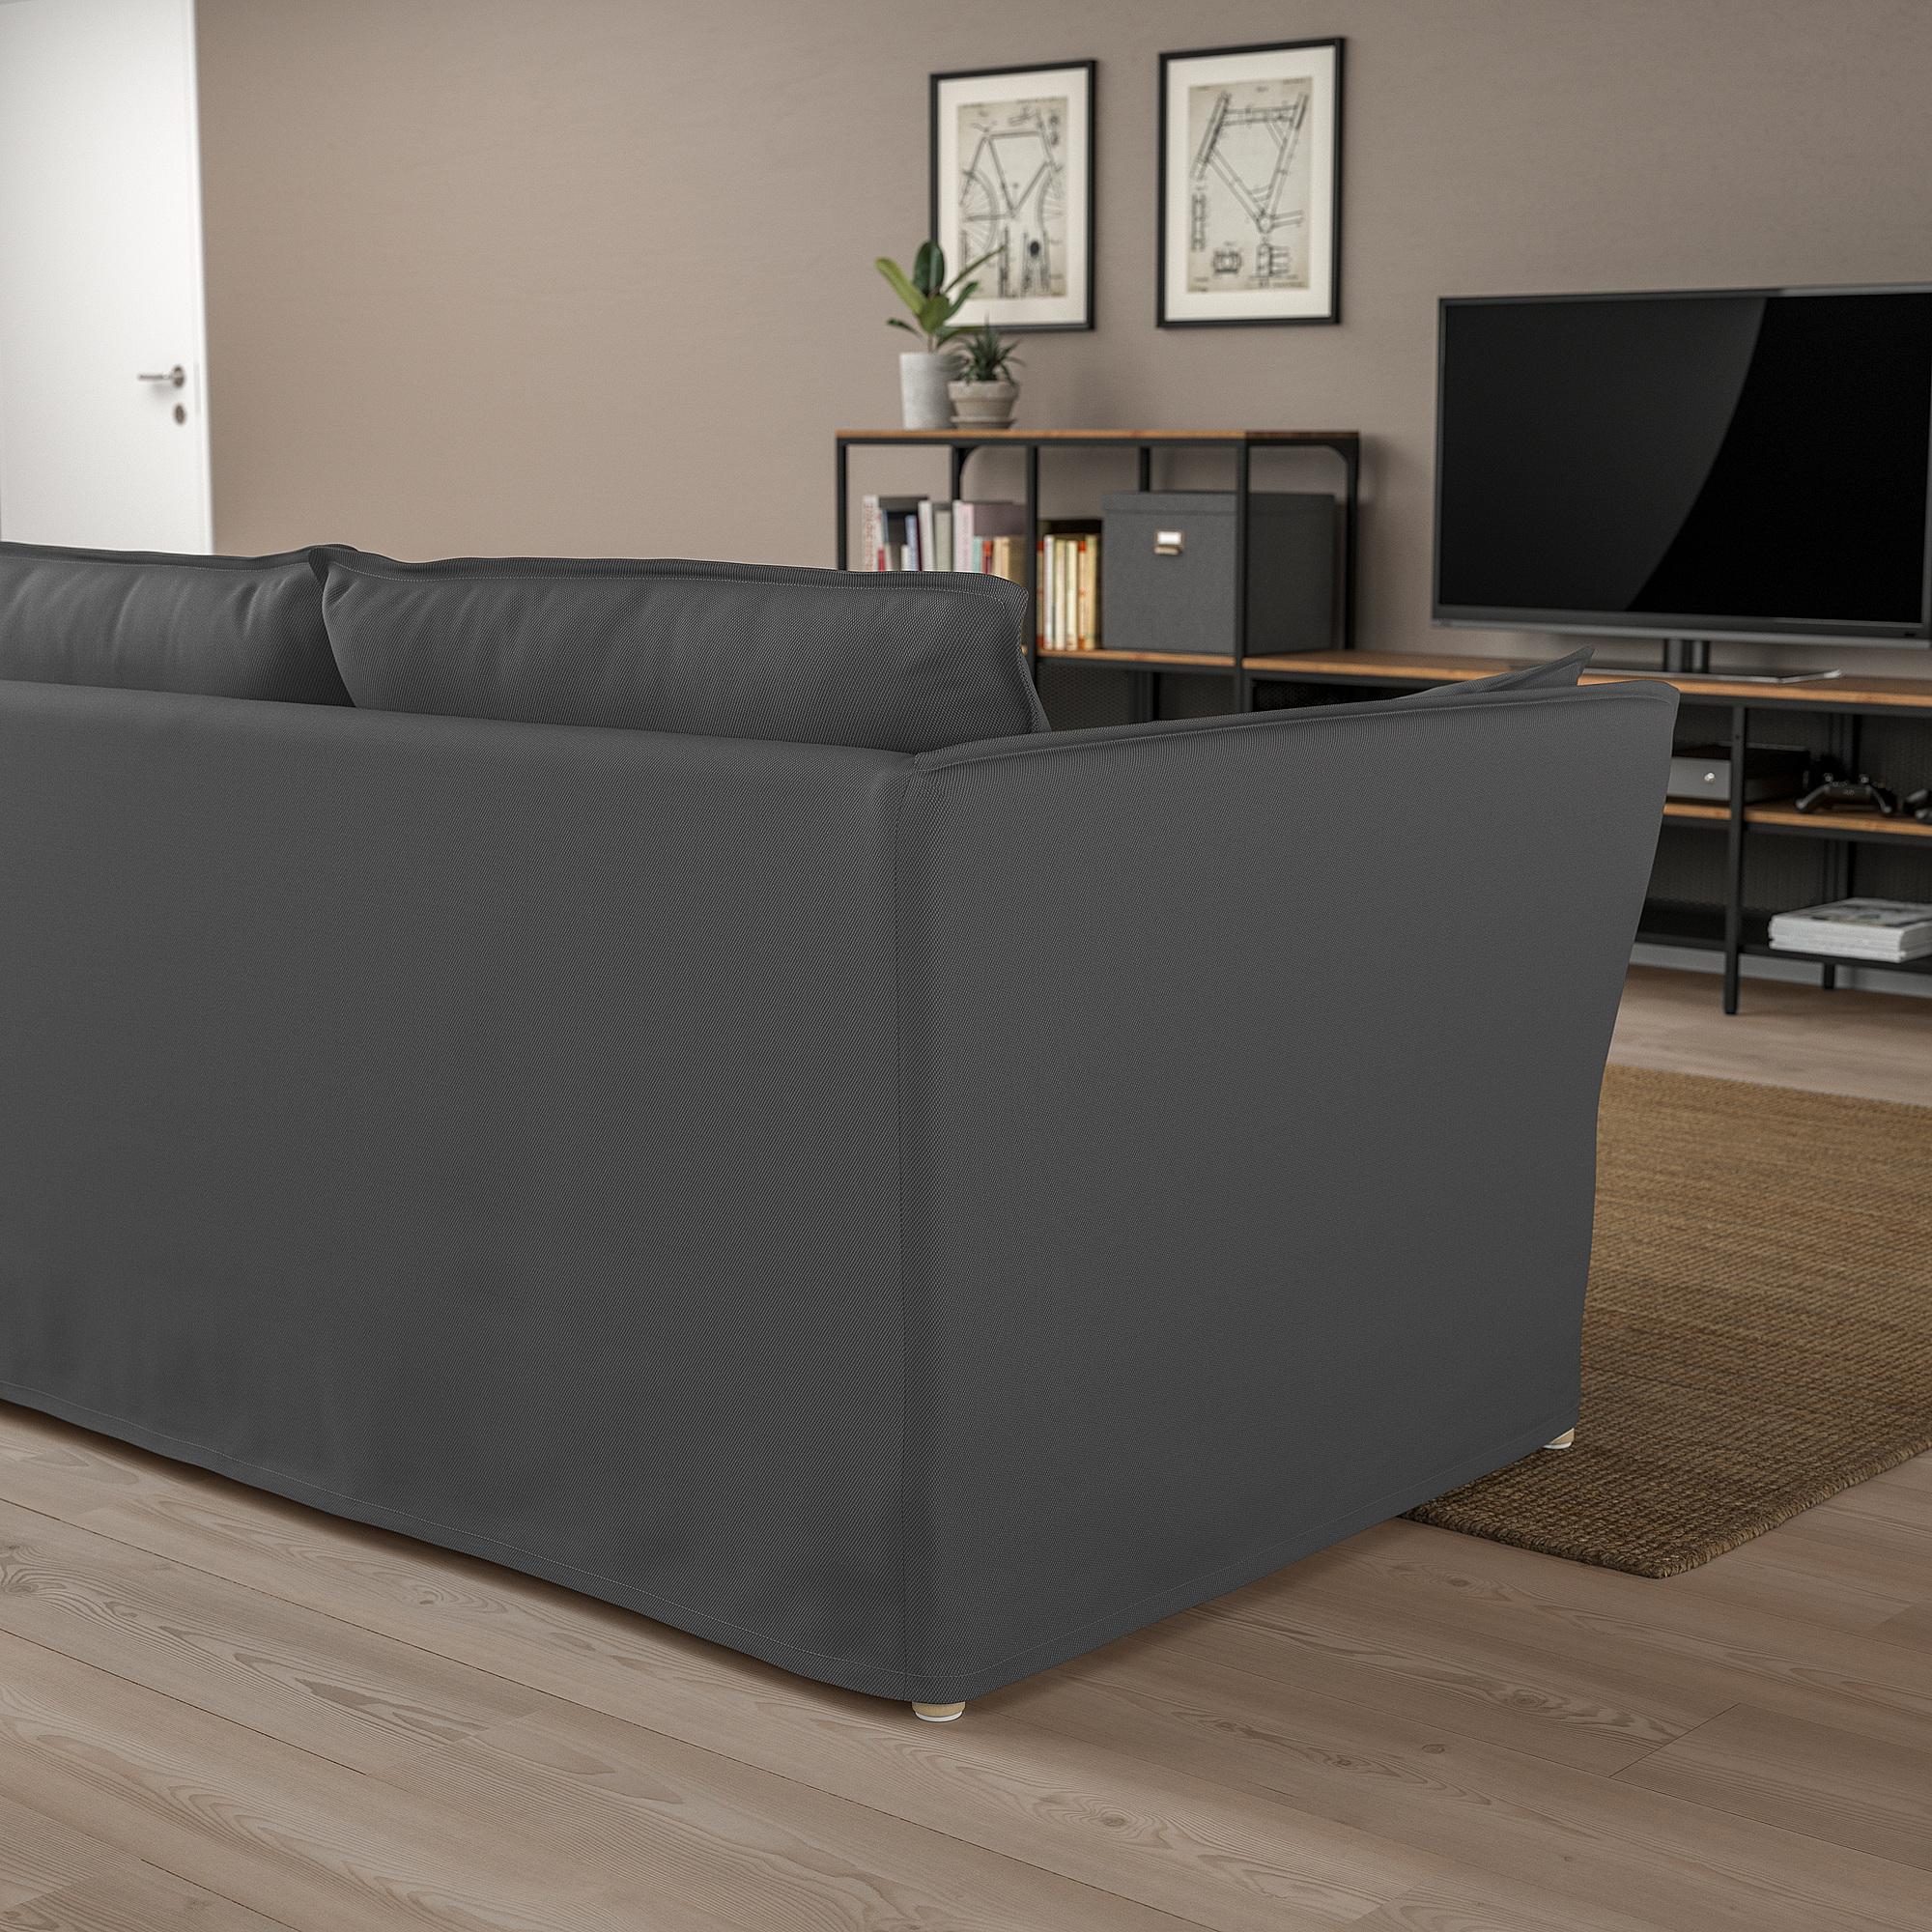 BACKSÄLEN 3-seat sofa